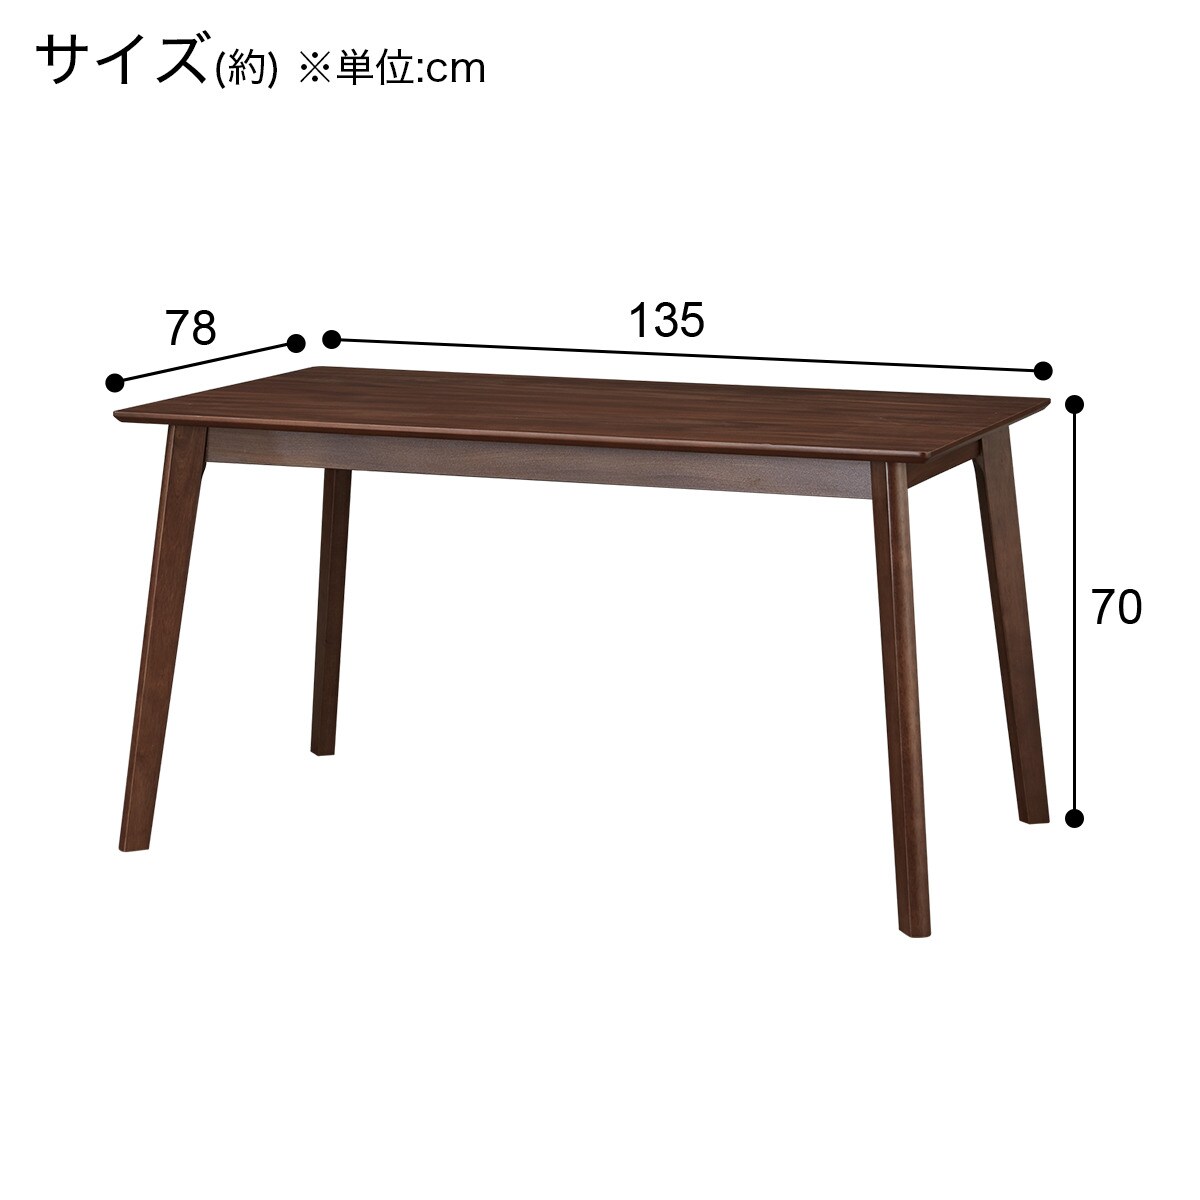 ダイニングテーブル(4LEG MBR 135 SJ601)通販 | ニトリネット【公式 